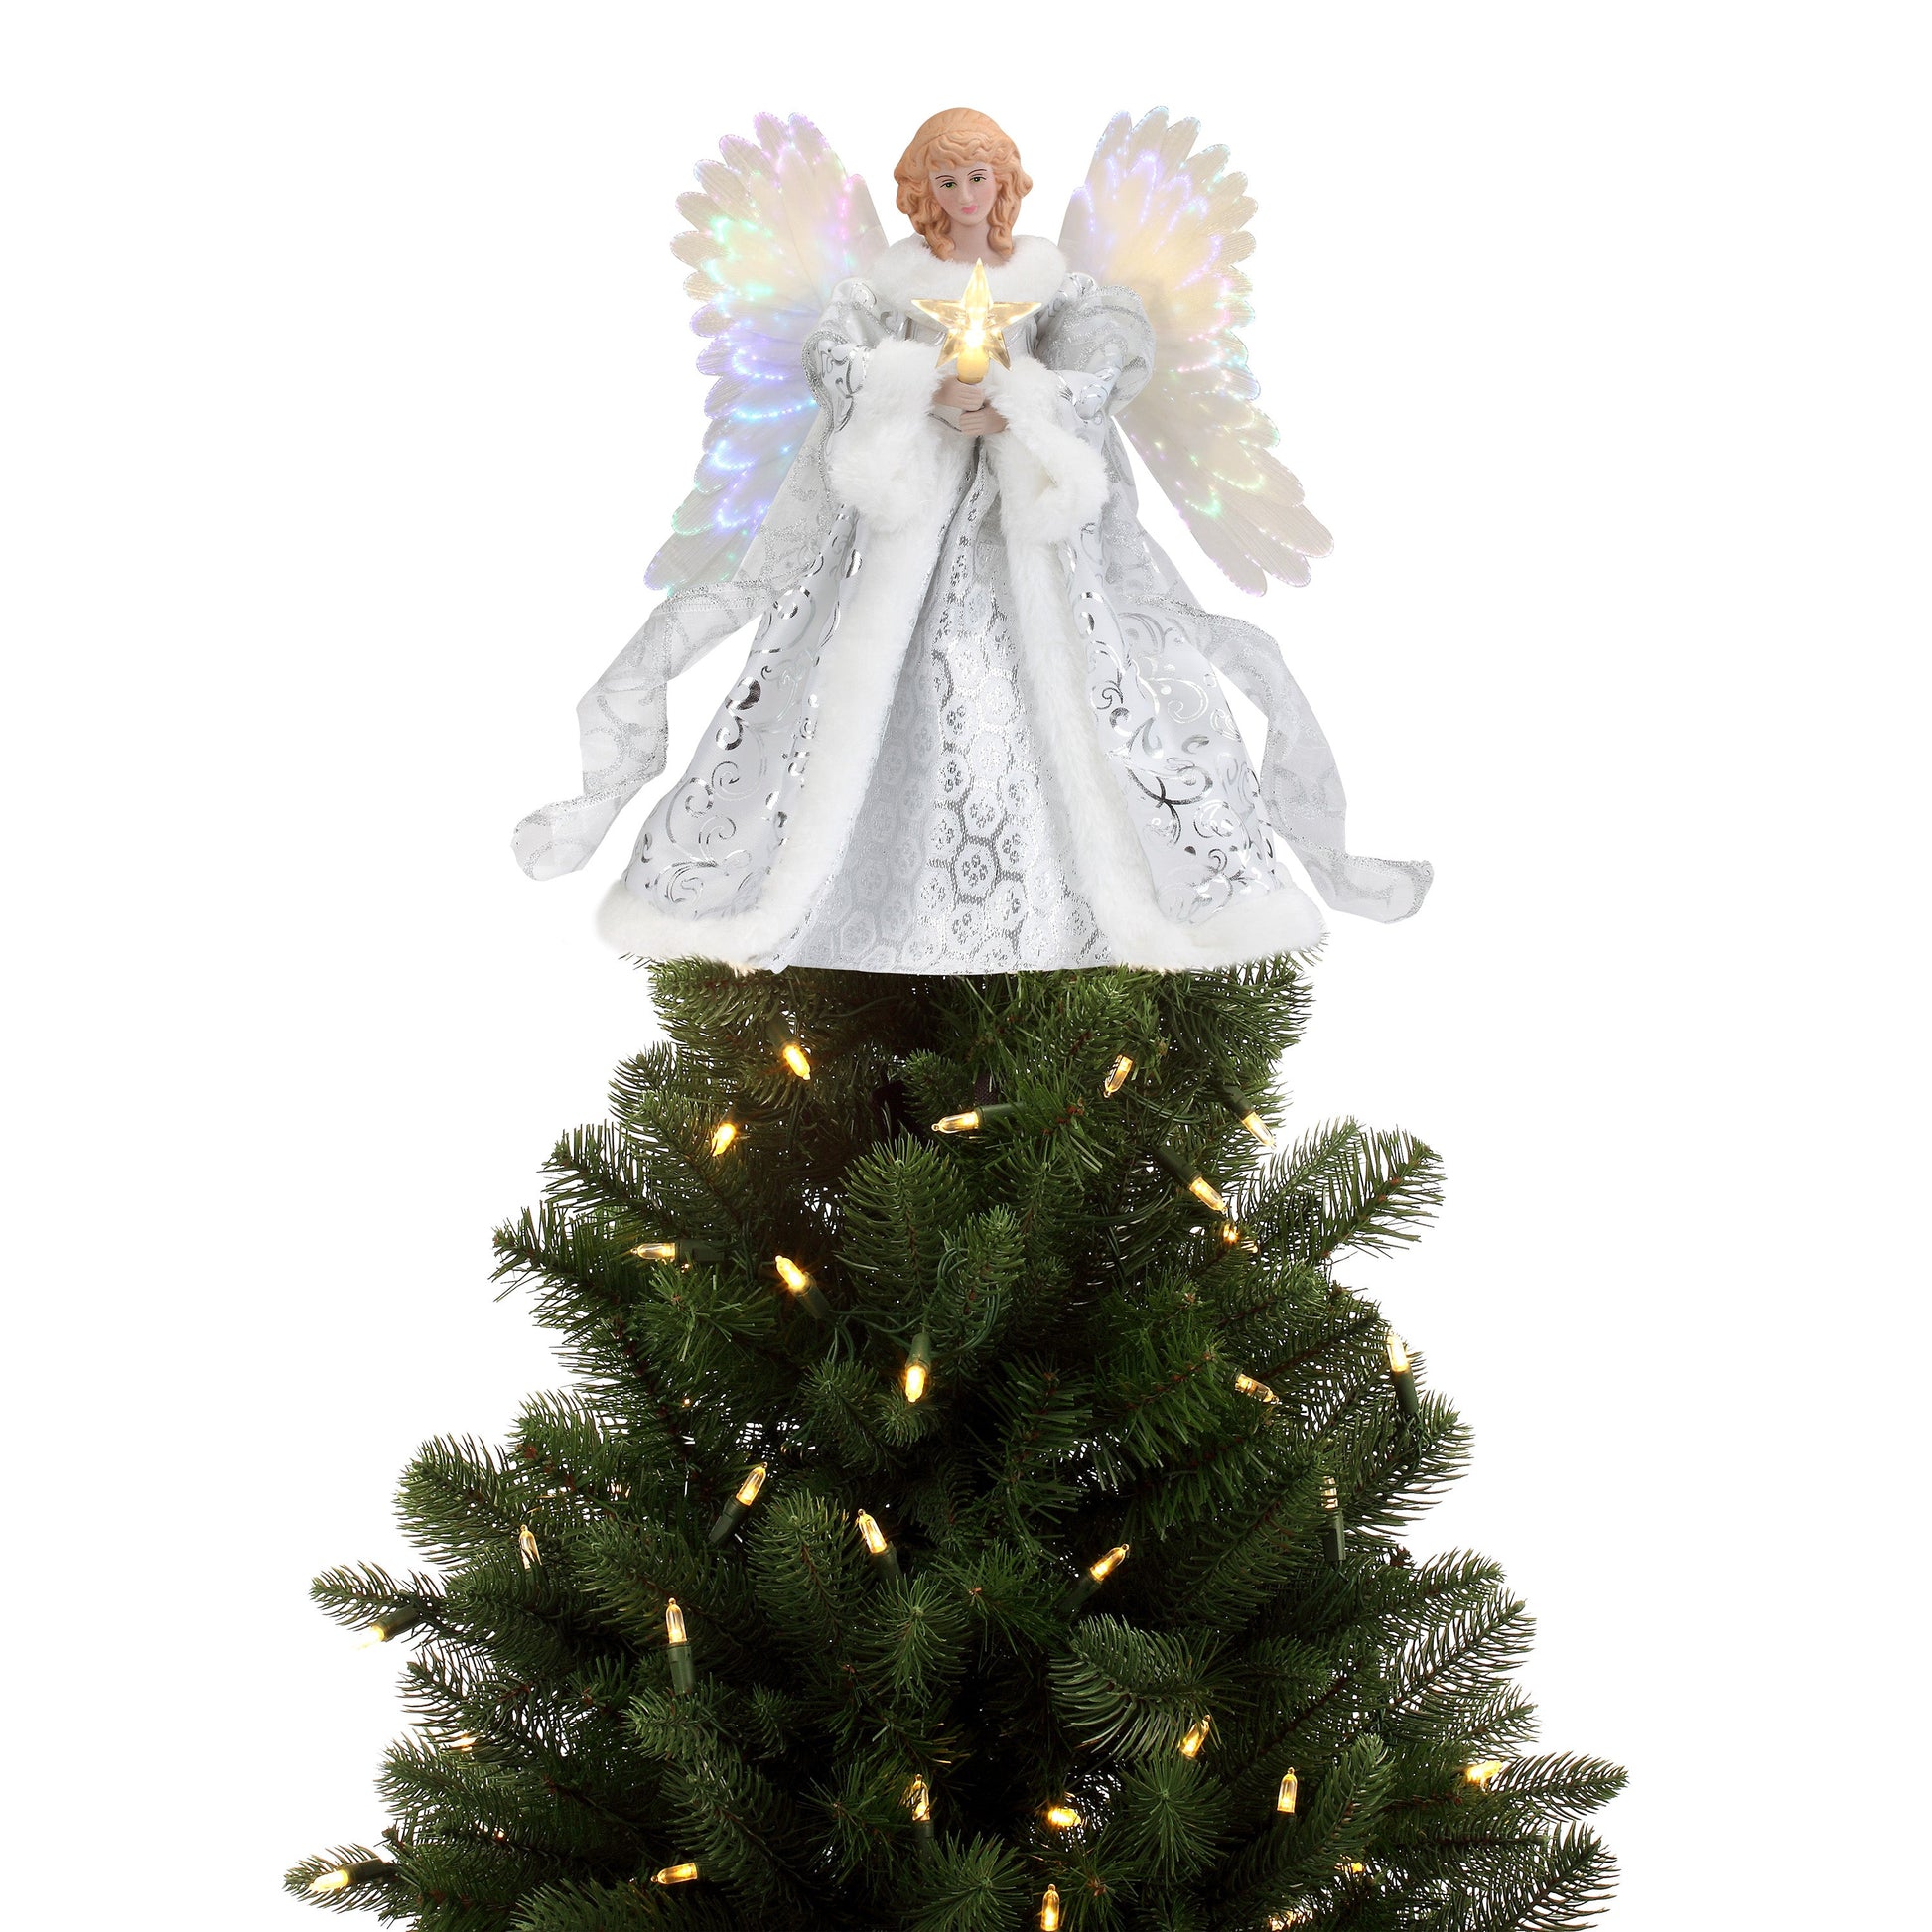 12" Fiber Optic Animated Tree Topper - White Angel